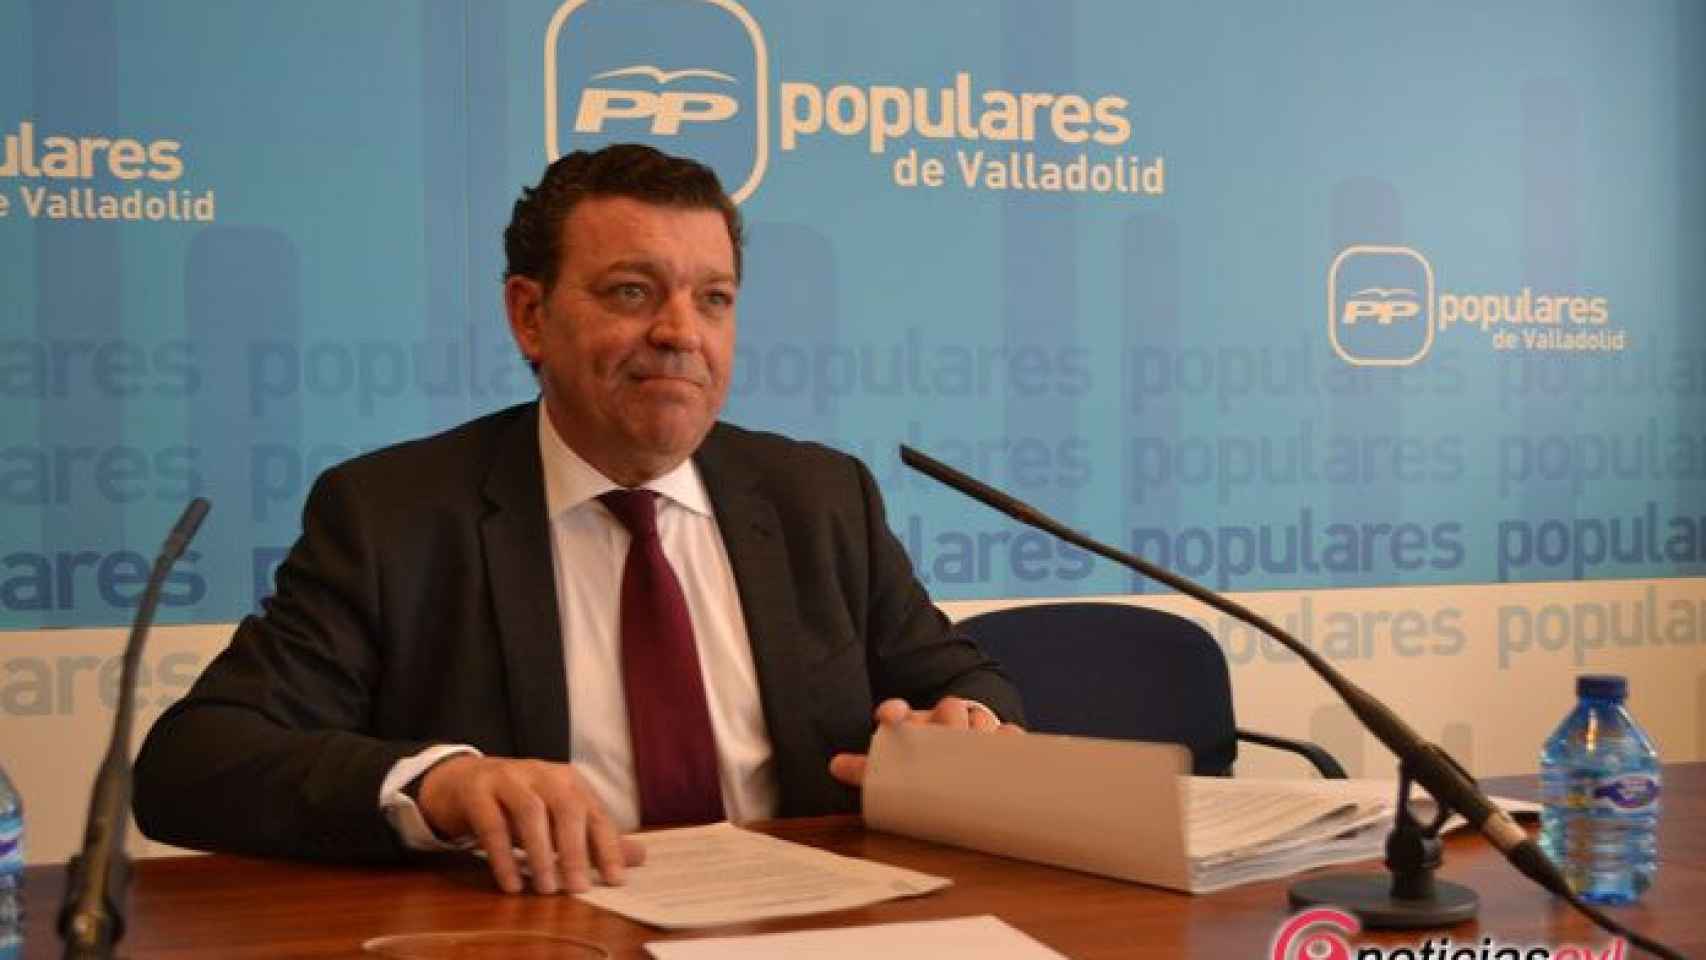 Luis-Miguel-Gonzalez-Gago-elecciones-pp-valladolid-